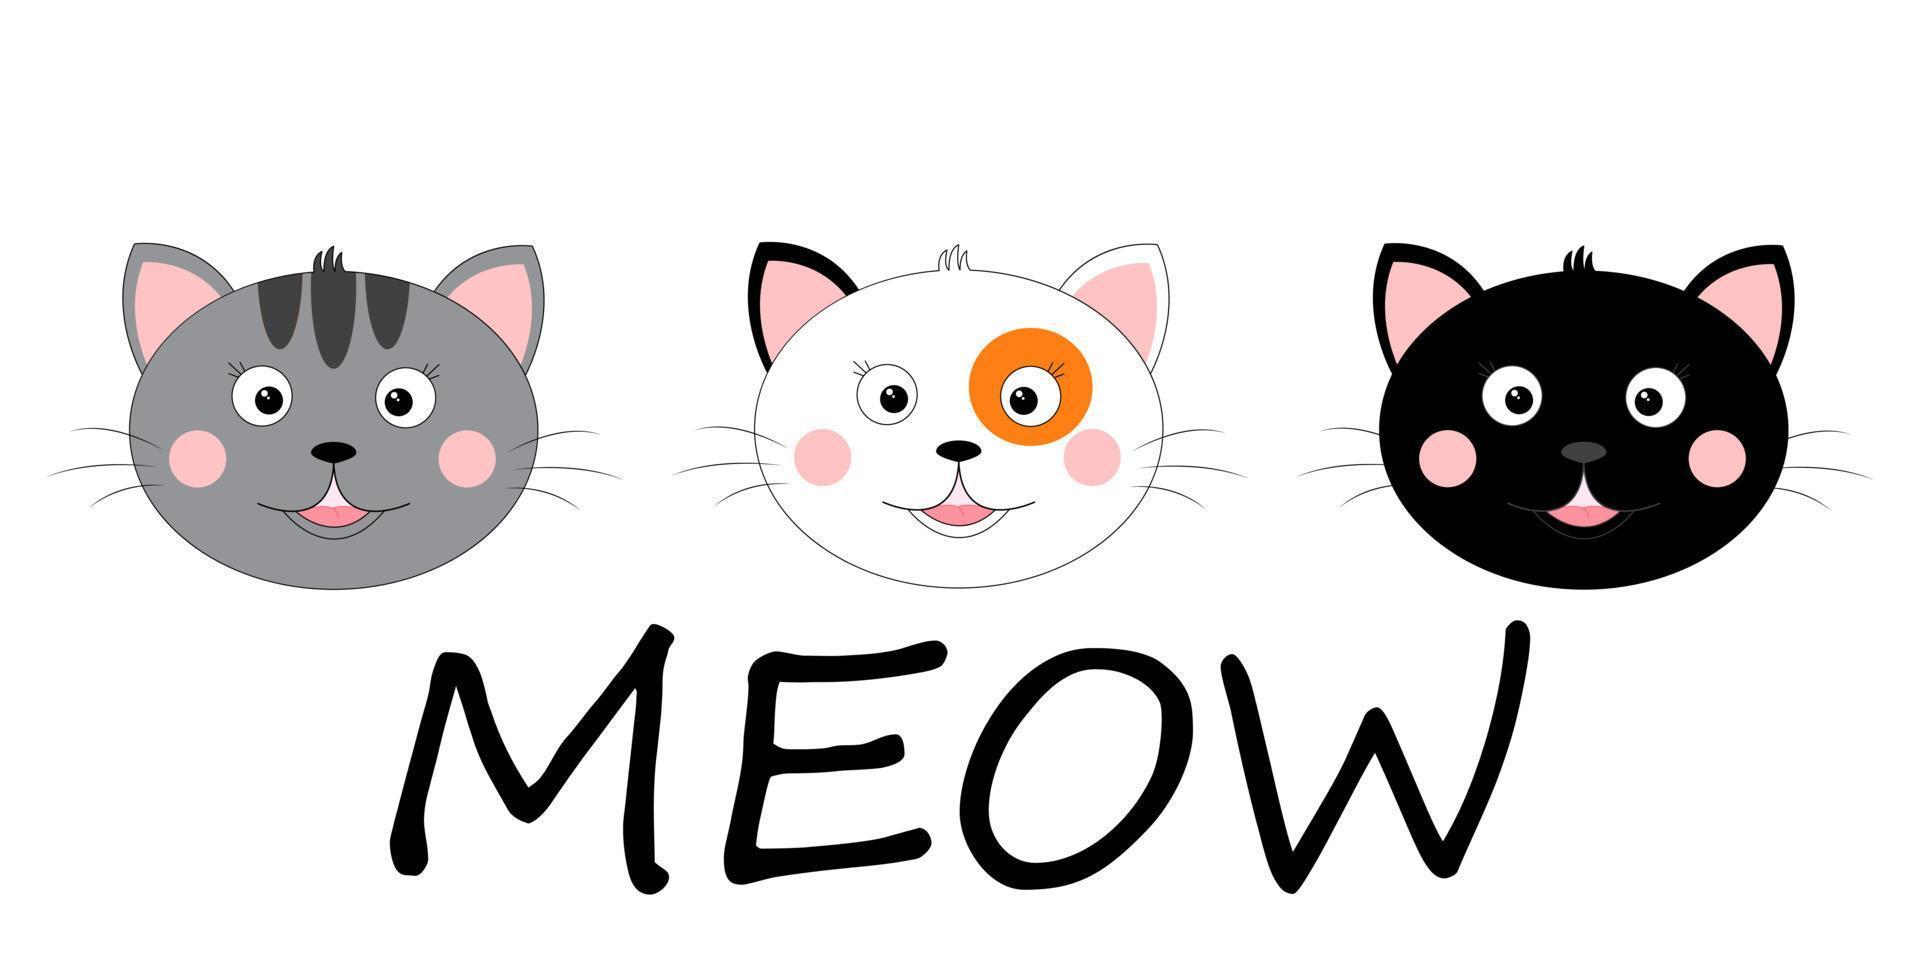 trois chats de dessin animé mignon. conception, impression. illustration vectorielle isolée sur fond blanc vecteur